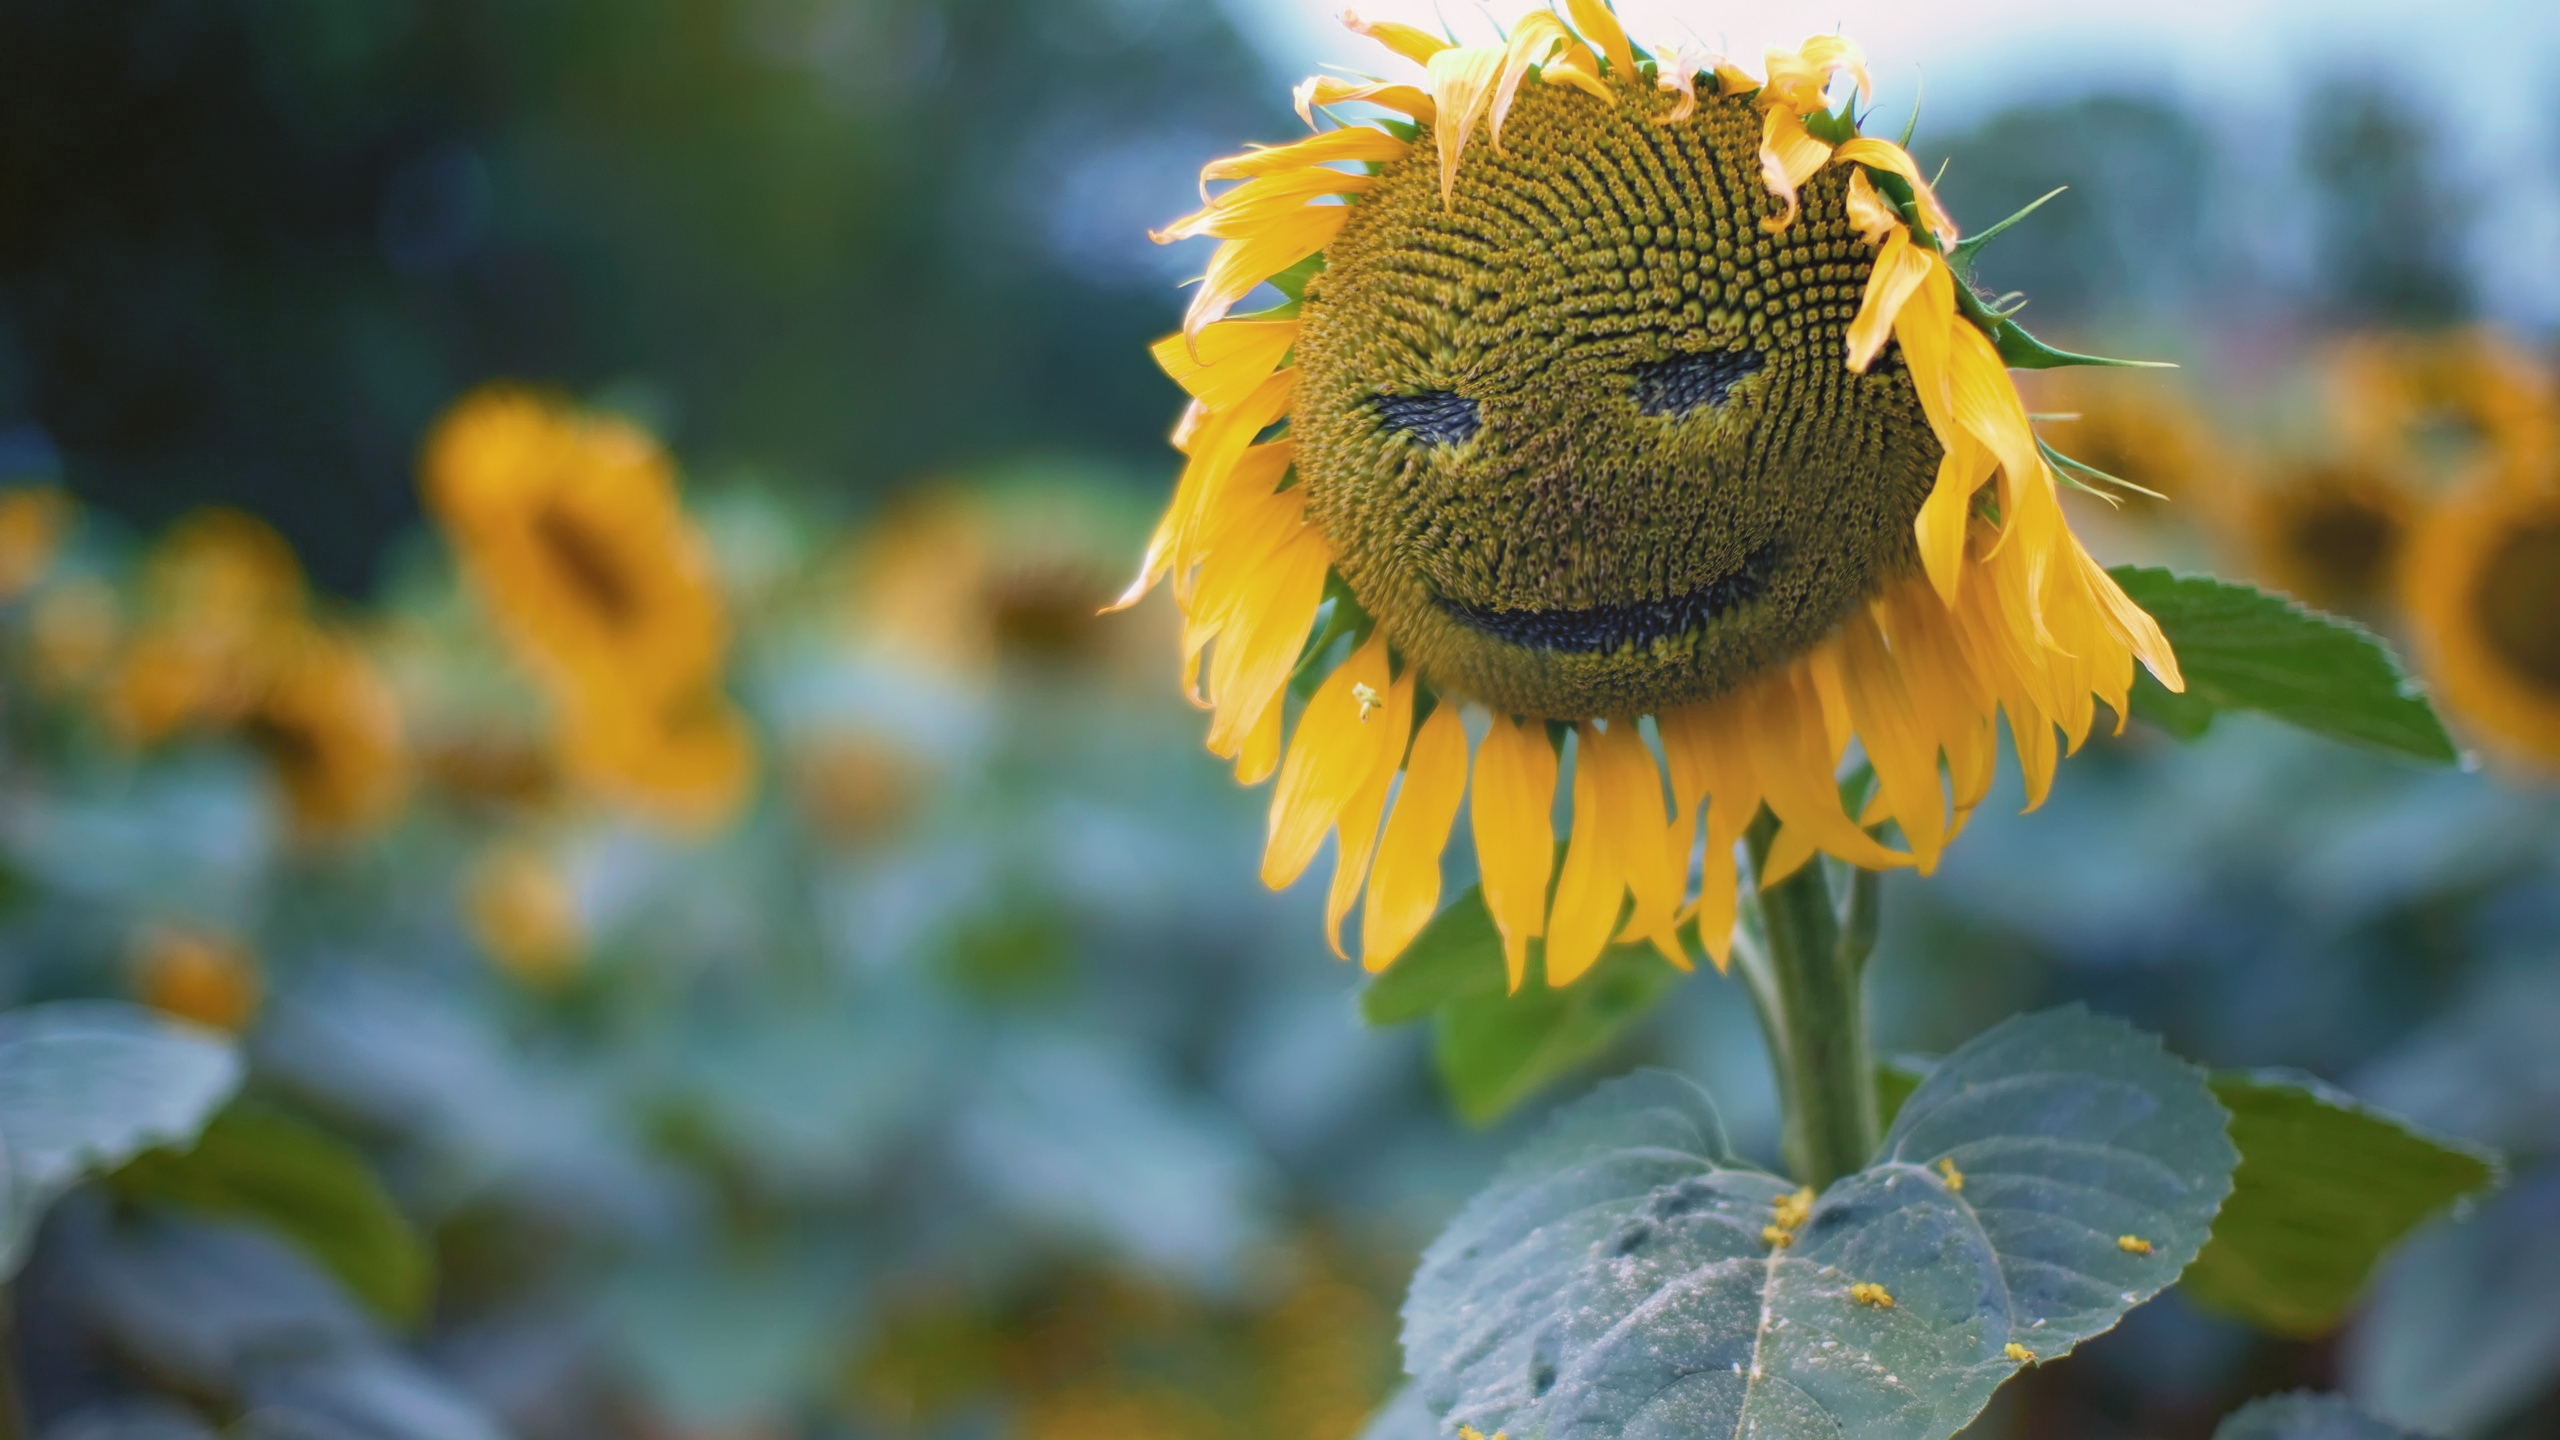 Sun Flower Face for 2560x1440 HDTV resolution